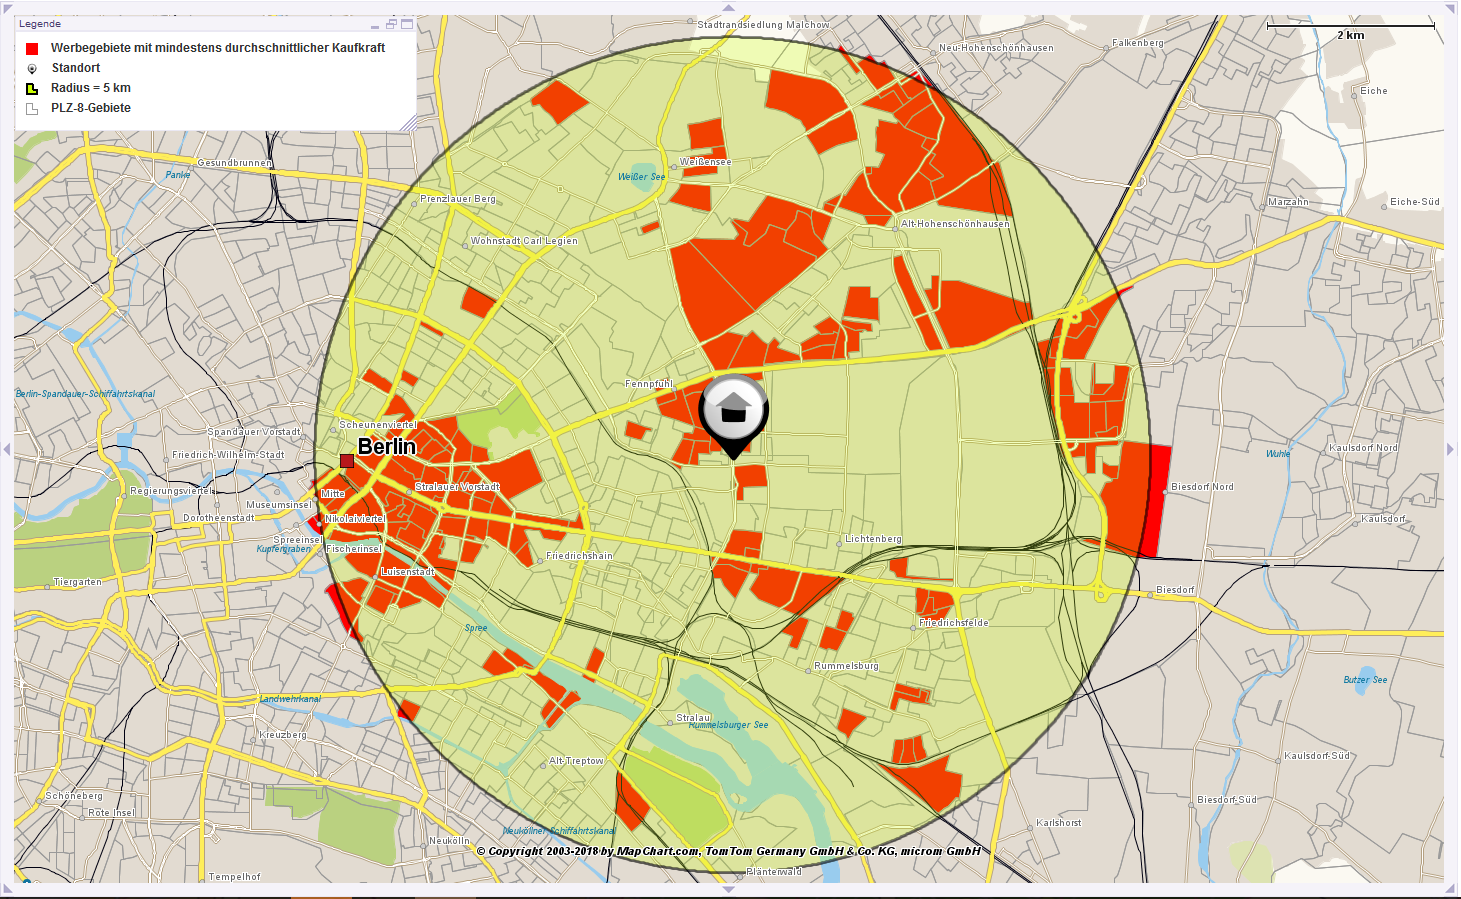 Eine Karte von Berlin, auf der ein Gebiet im Umkreis von 5 km umeinen Standort gelb hervorgehoben ist. Dieser stellt ein Potentialgebiet für die Mediaplanung dar. In orangener Farbe sind Gebiete innerhalb des Radius hervorgehoben, welche mindestens über eine durchschnittlichen Kaufkraft verfügen.